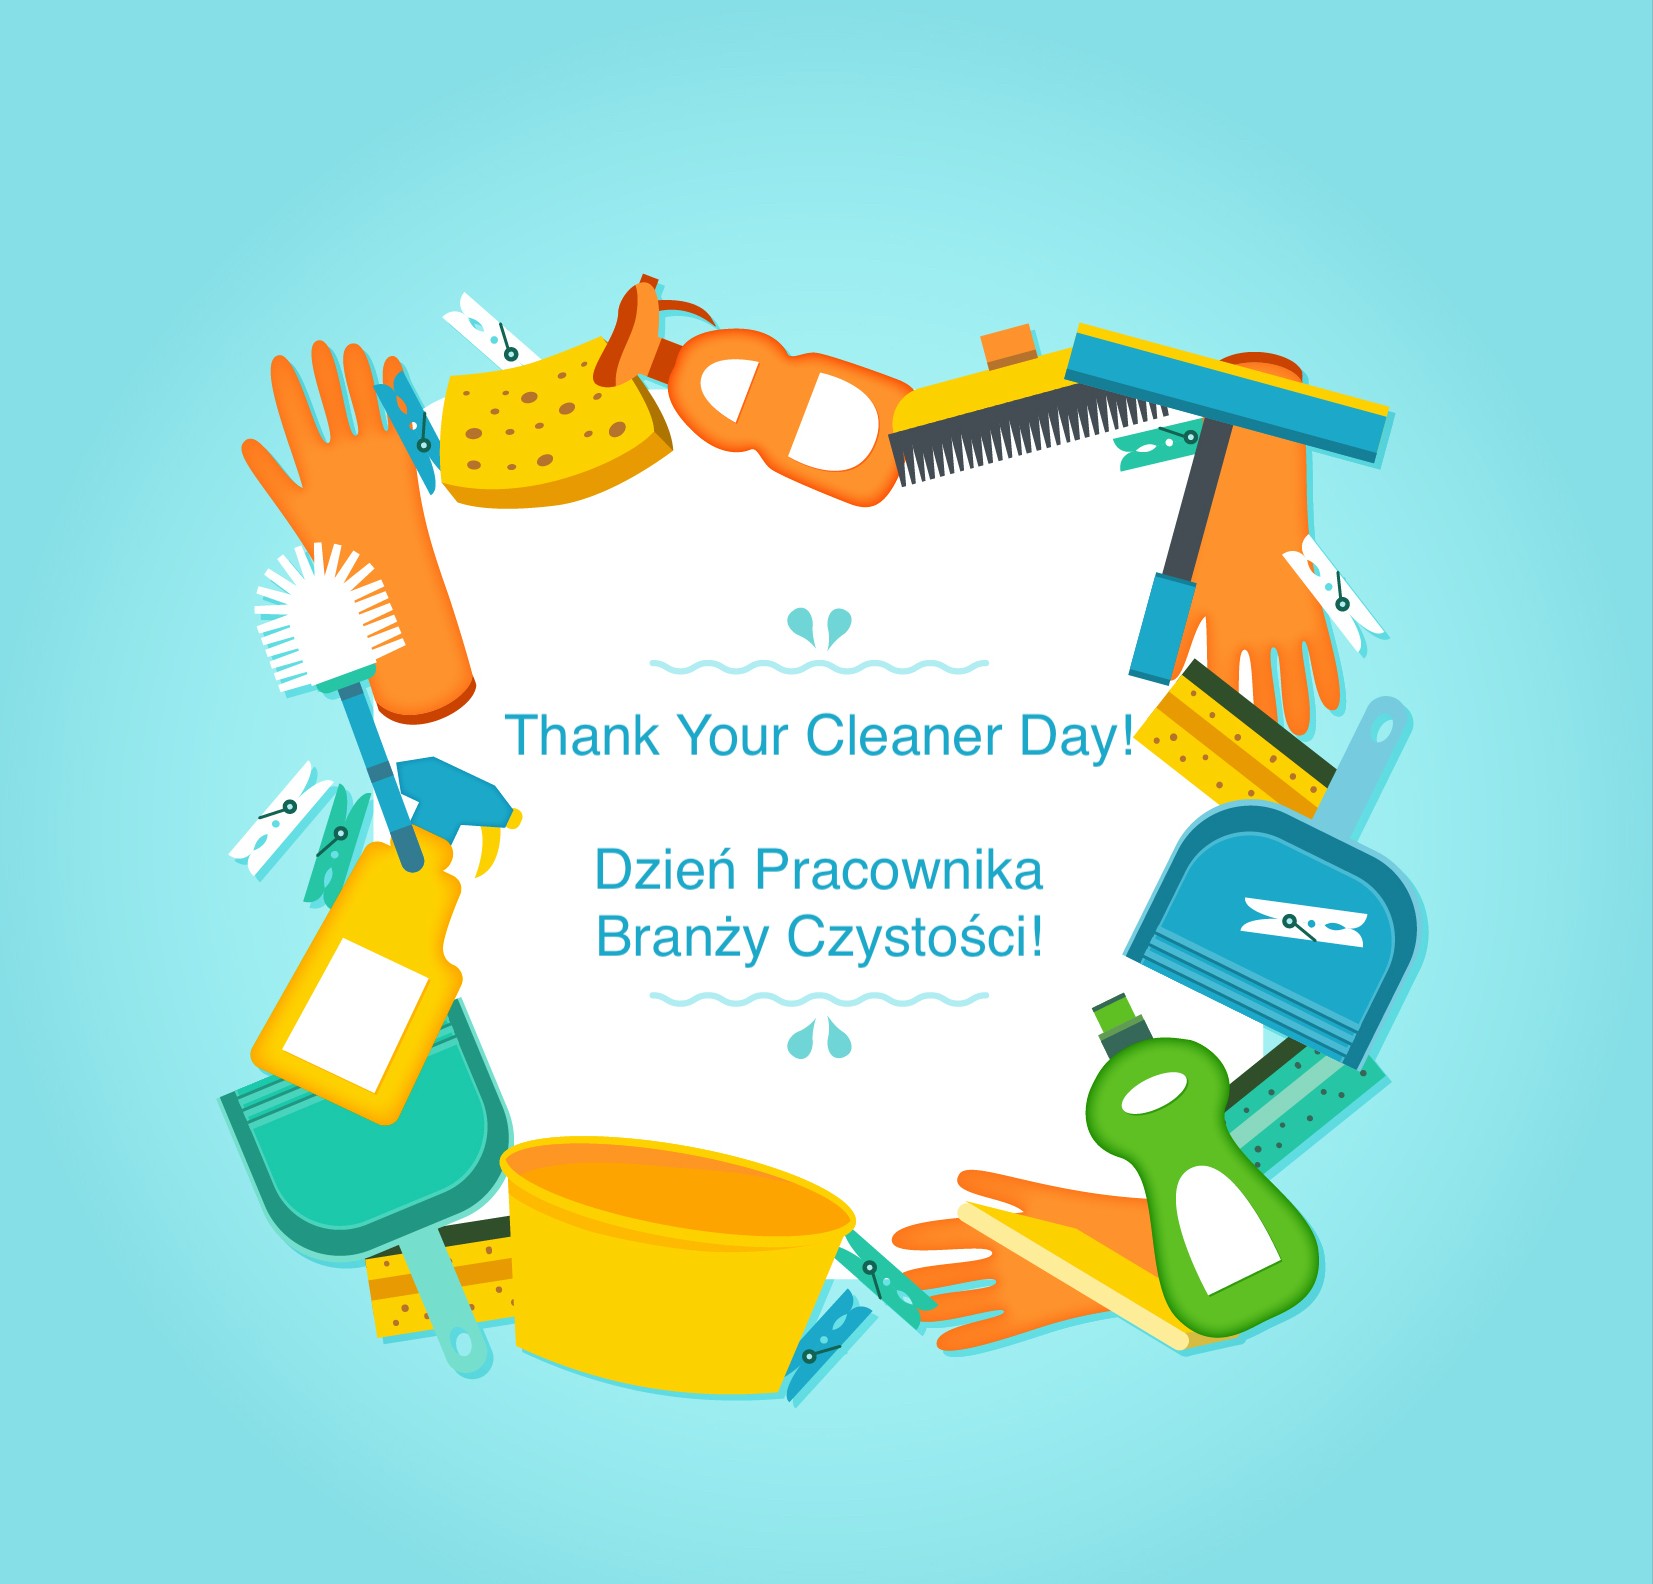 Dzień Pracownika Branży Czystości - dzień wdzięczności za czystość!